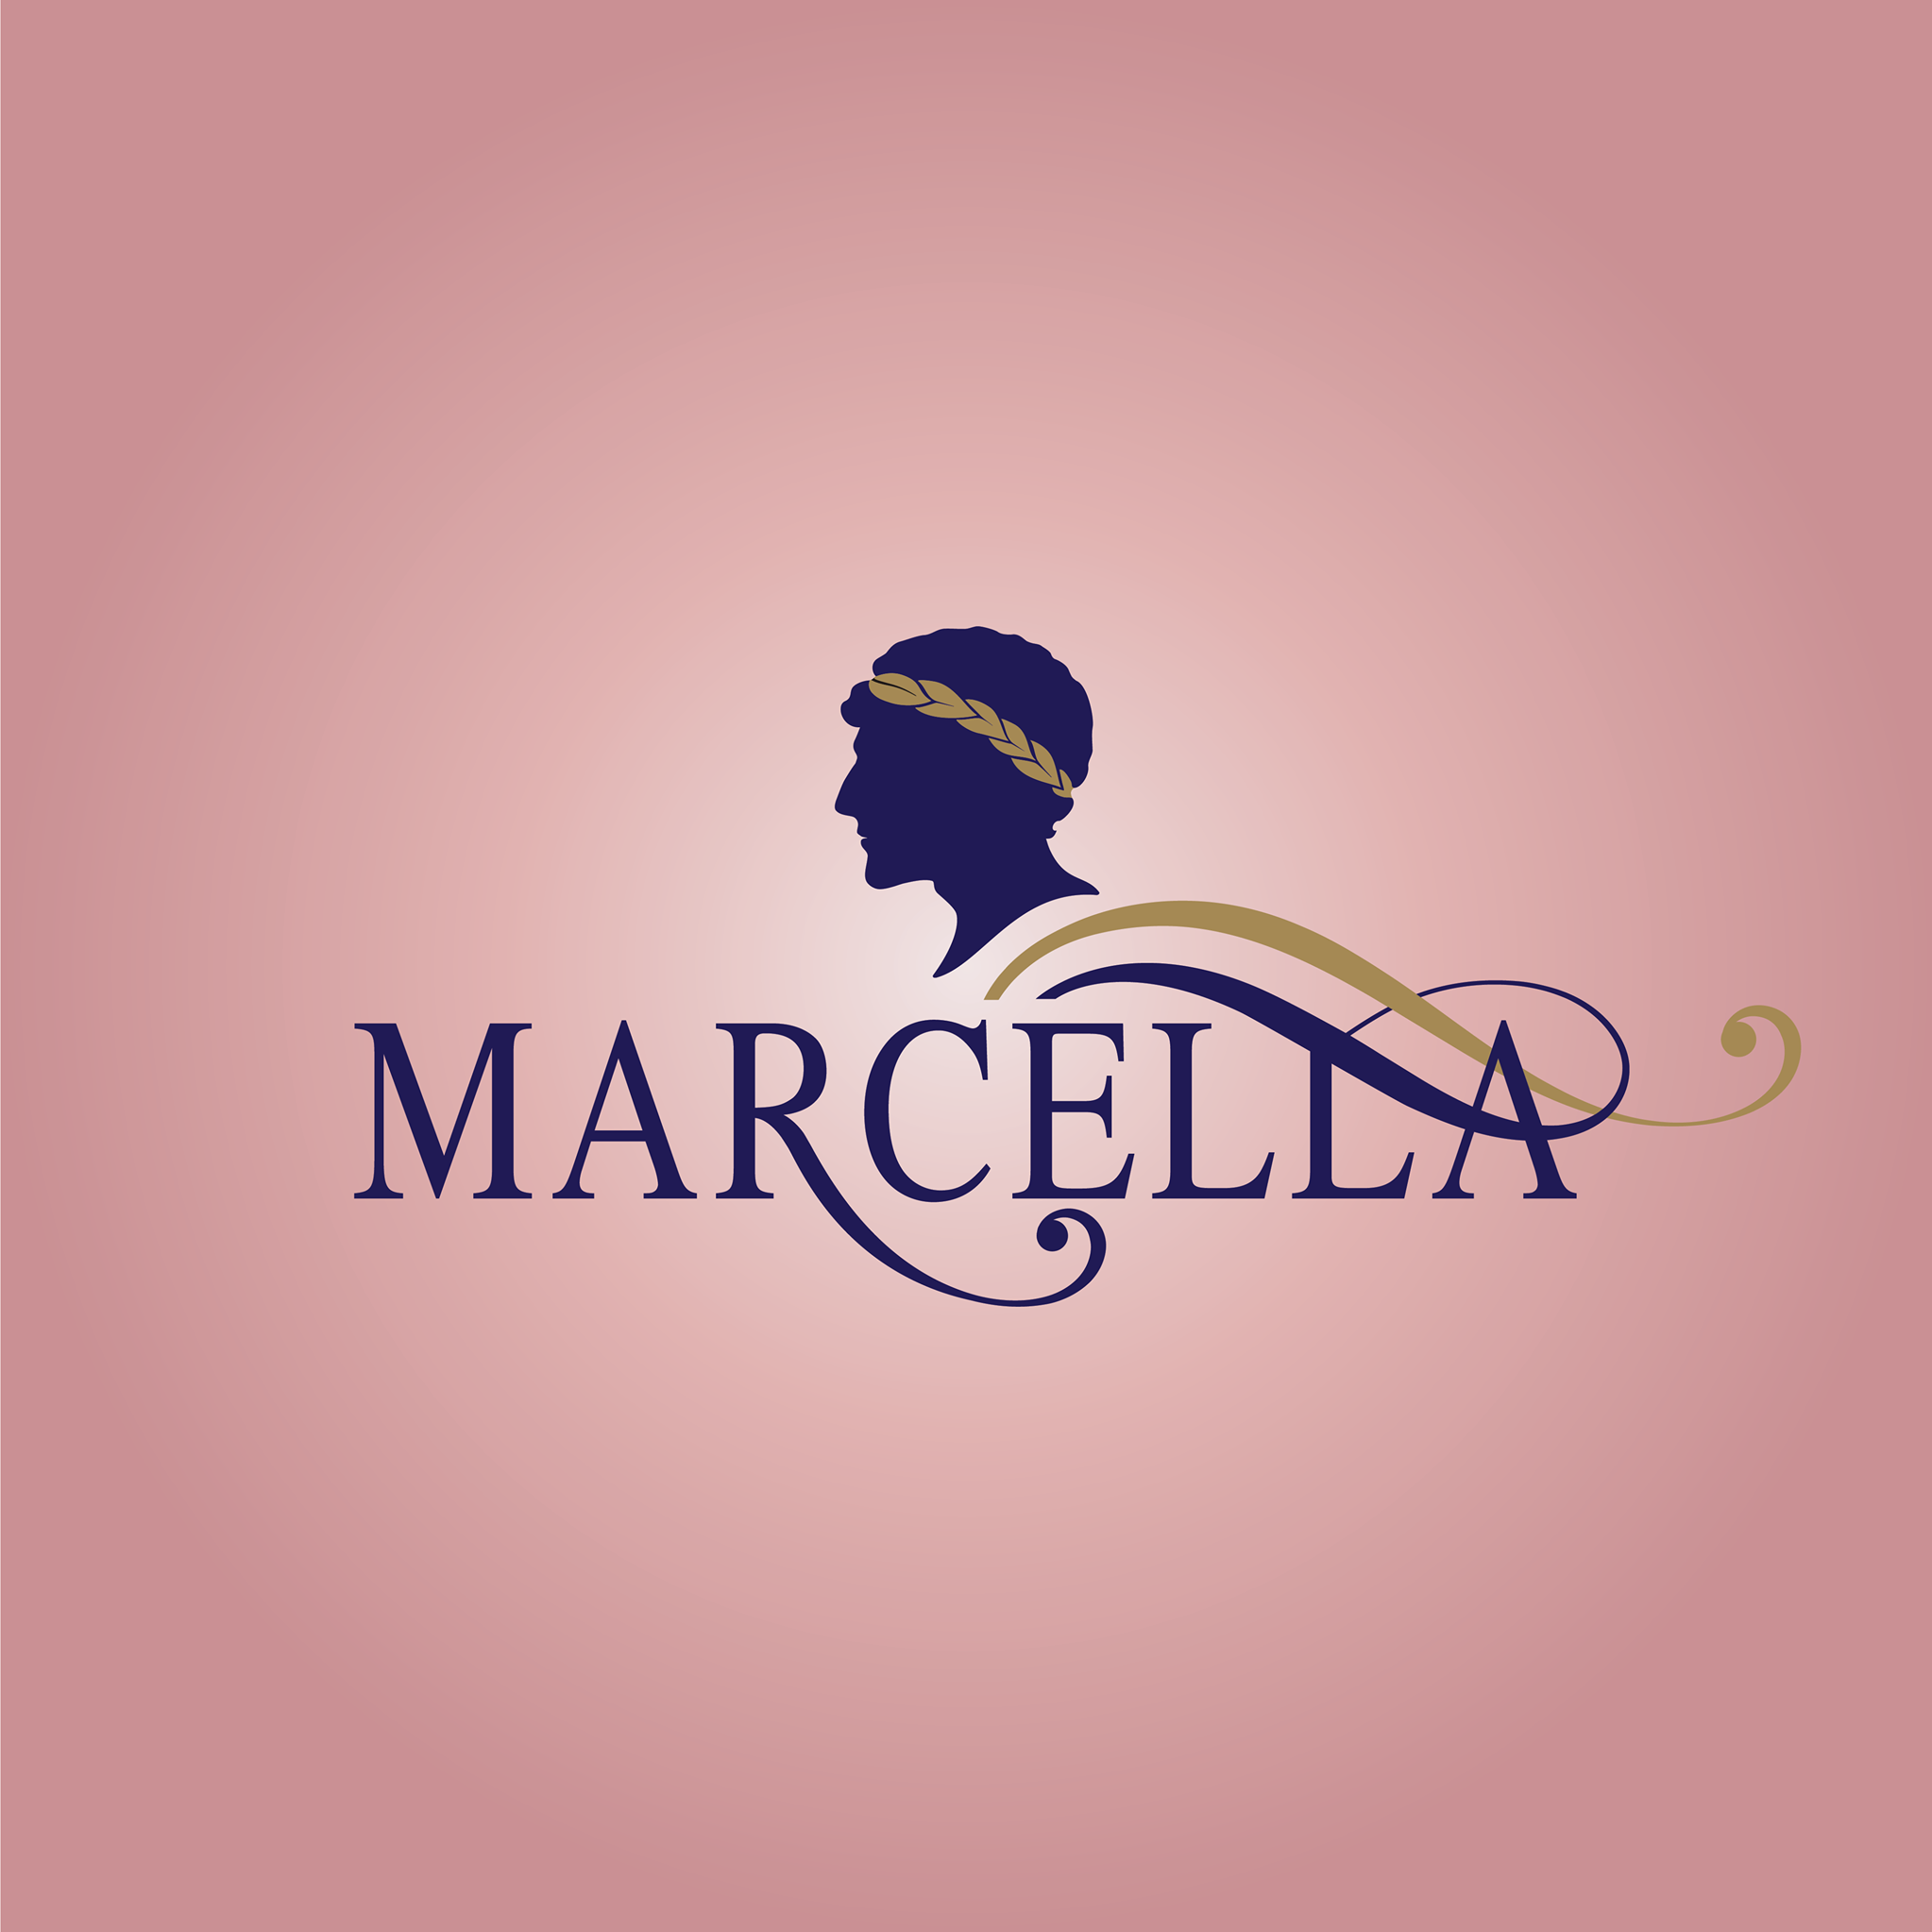 Marcella Premium